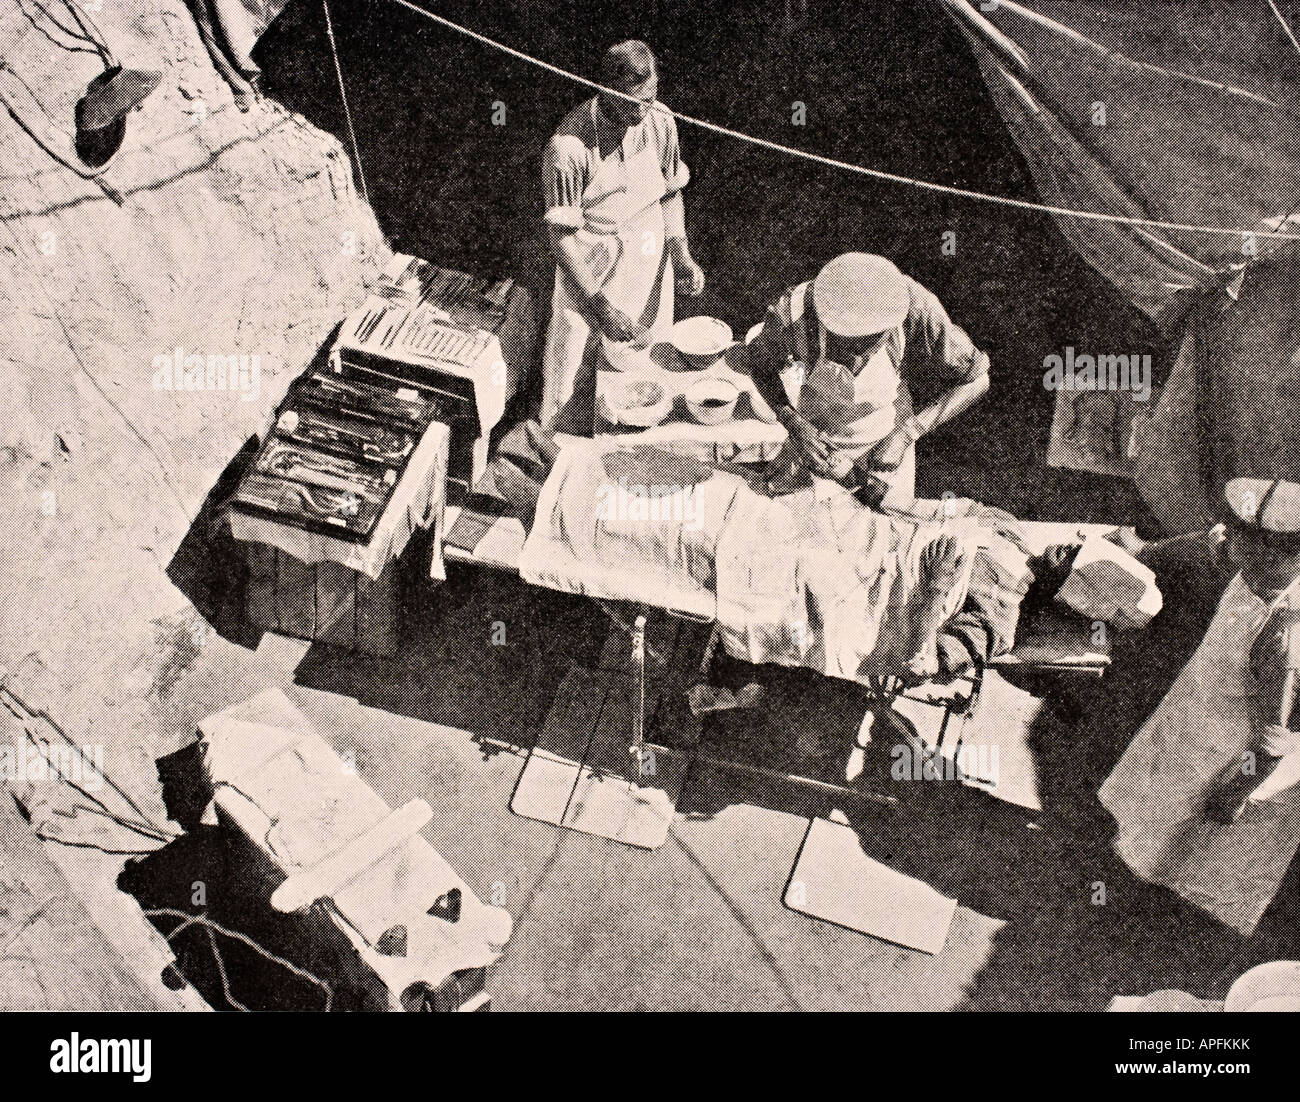 Chirurgia di campo nella penisola di Gallipoli, Turchia 1915 durante la prima guerra mondiale. Il chirurgo sta rimuovendo un proiettile dal braccio di un soldato. Foto Stock